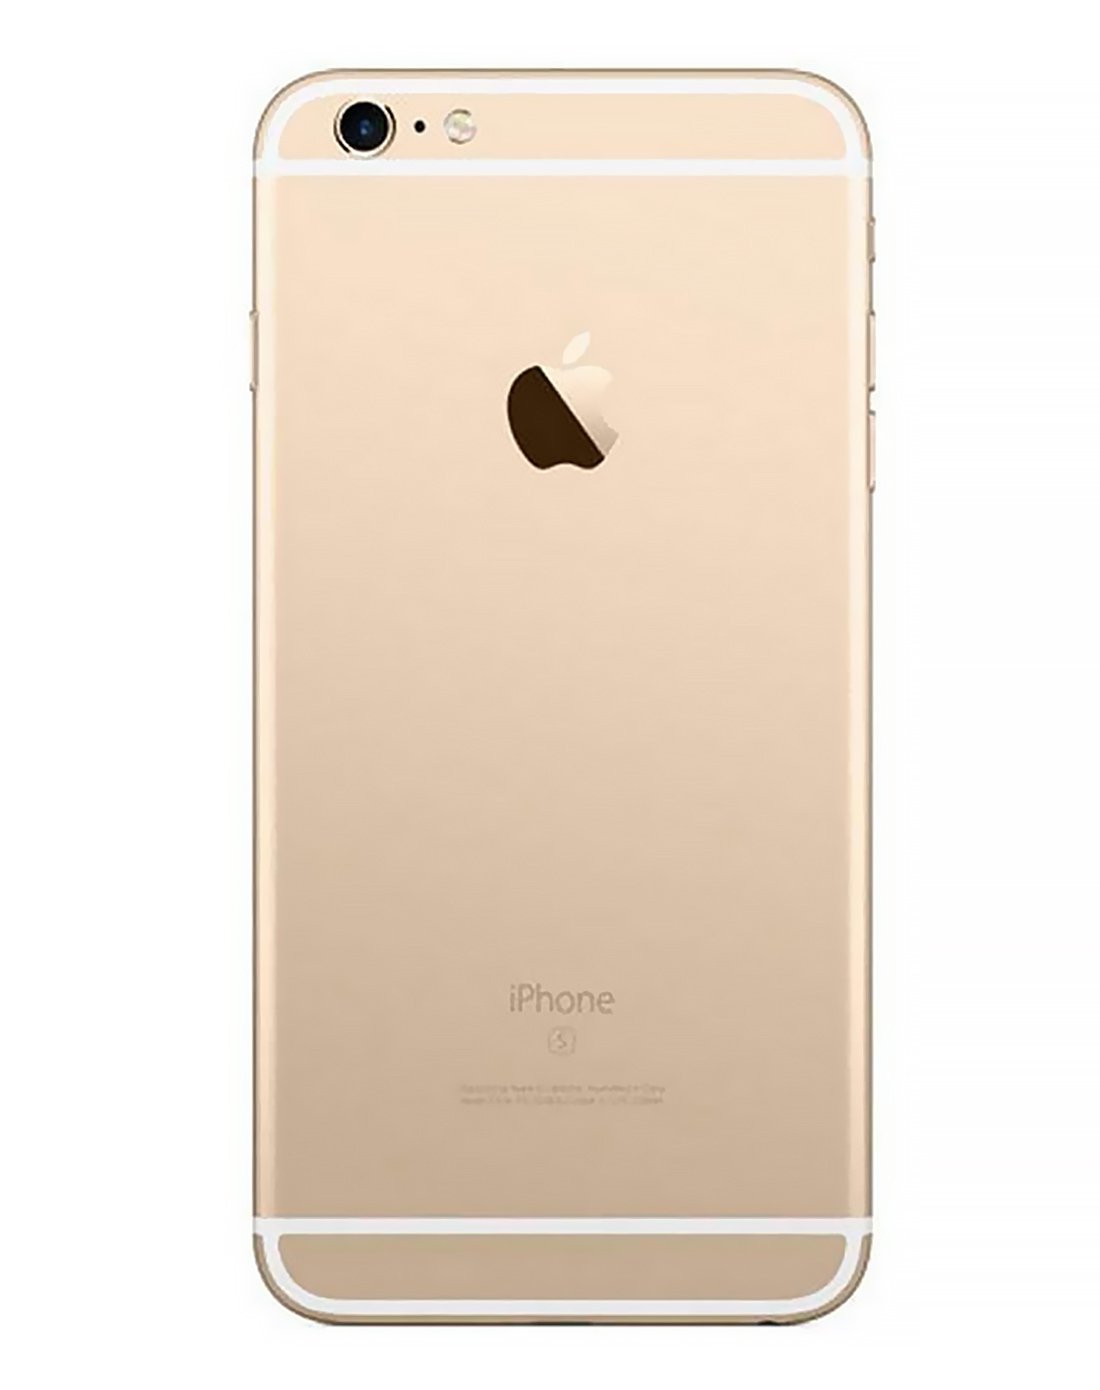 【特惠套餐】 苹果iphone 6s plus 金色 128gb全网通